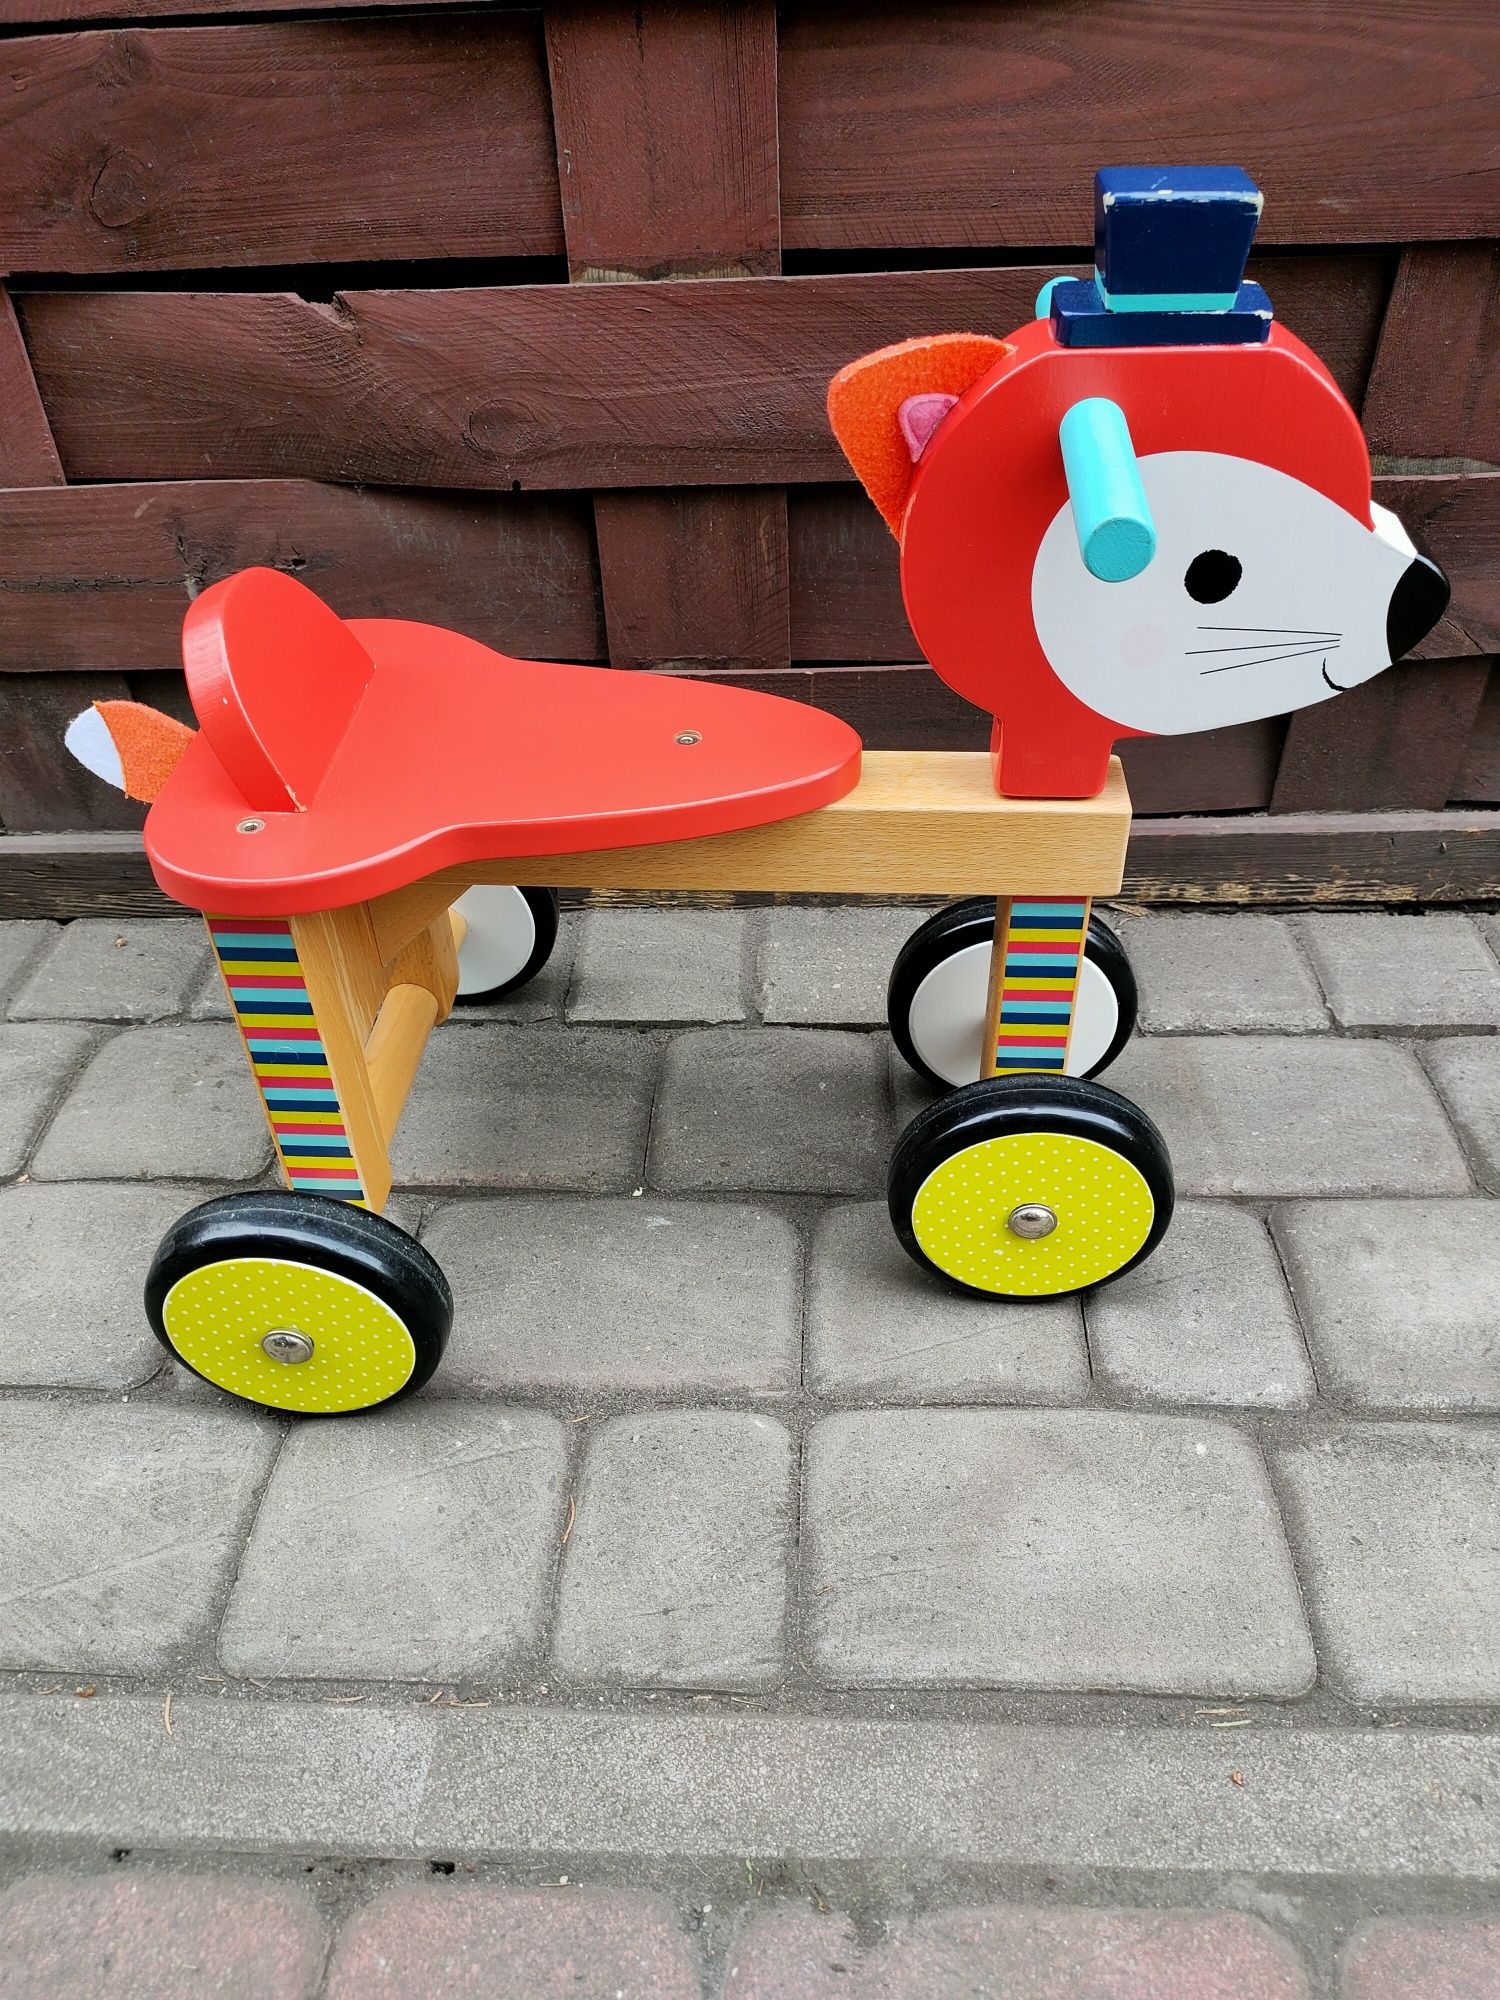 Rowerek biegowy Czterokołowy francuskiej firmyJANOD/rower dla dzieci